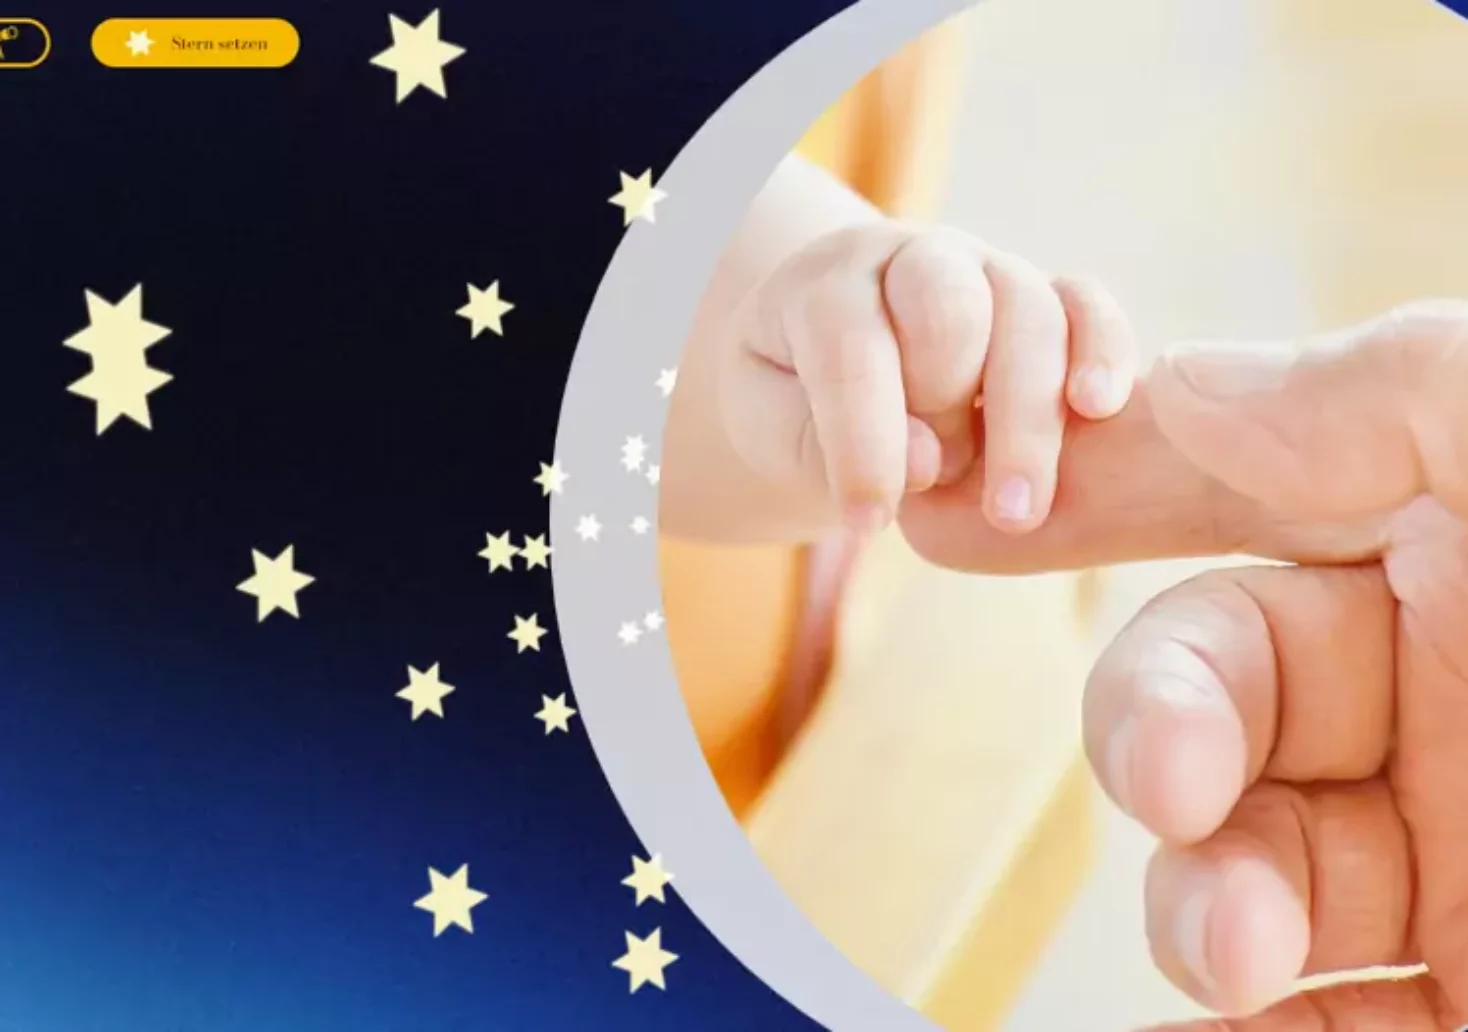 Setze einen Stern für dein geliebtes Kind im virtuellen Sternehimmel!